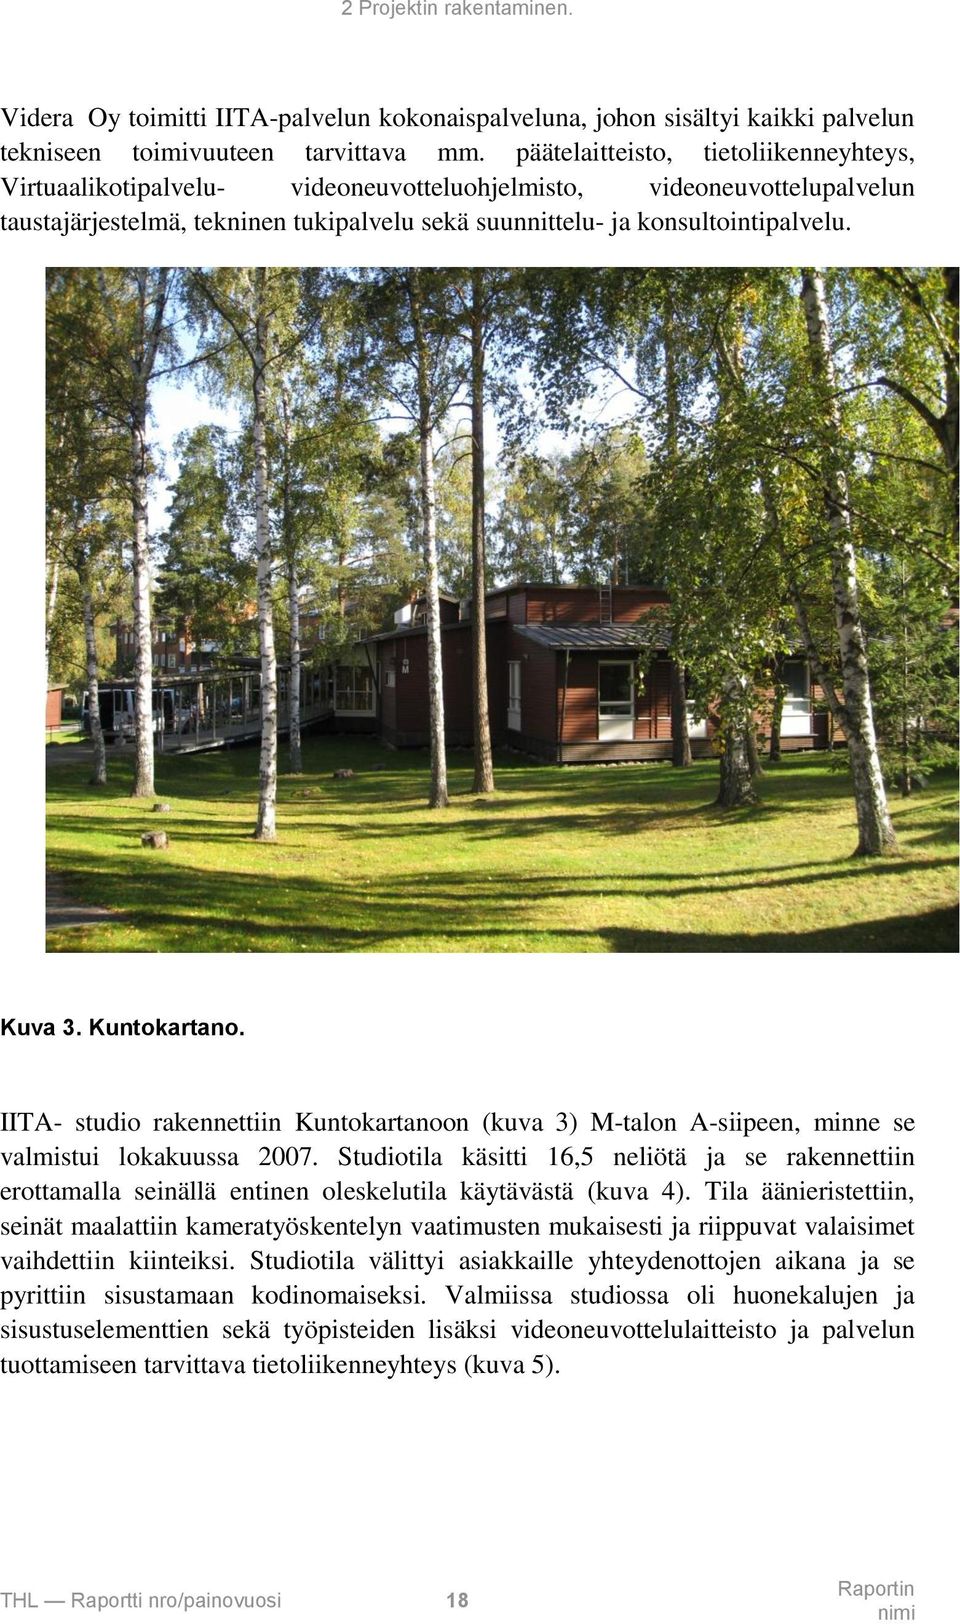 Kuntokartano. IITA- studio rakennettiin Kuntokartanoon (kuva 3) M-talon A-siipeen, minne se valmistui lokakuussa 2007.